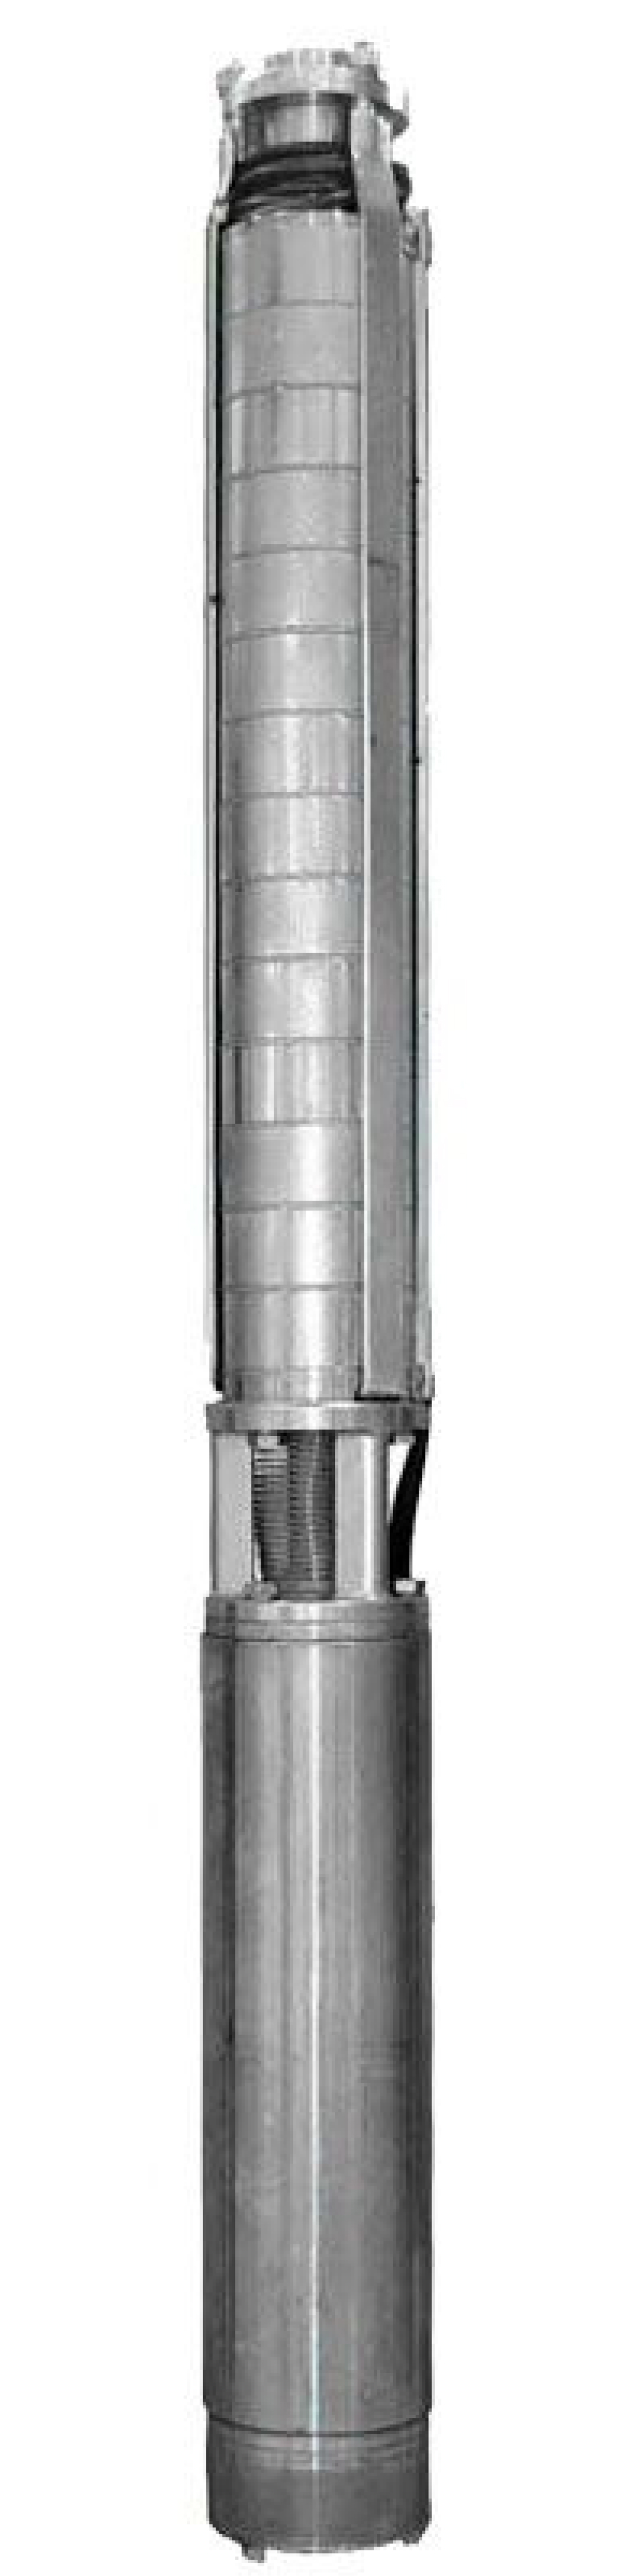 Насос скважинный Ливнынасос ЭЦВ 4-10-70 центробежный, производительность 10 м3/час, напор 70 м, мощность 4 кВт, напряжение трехфазной сети 380В